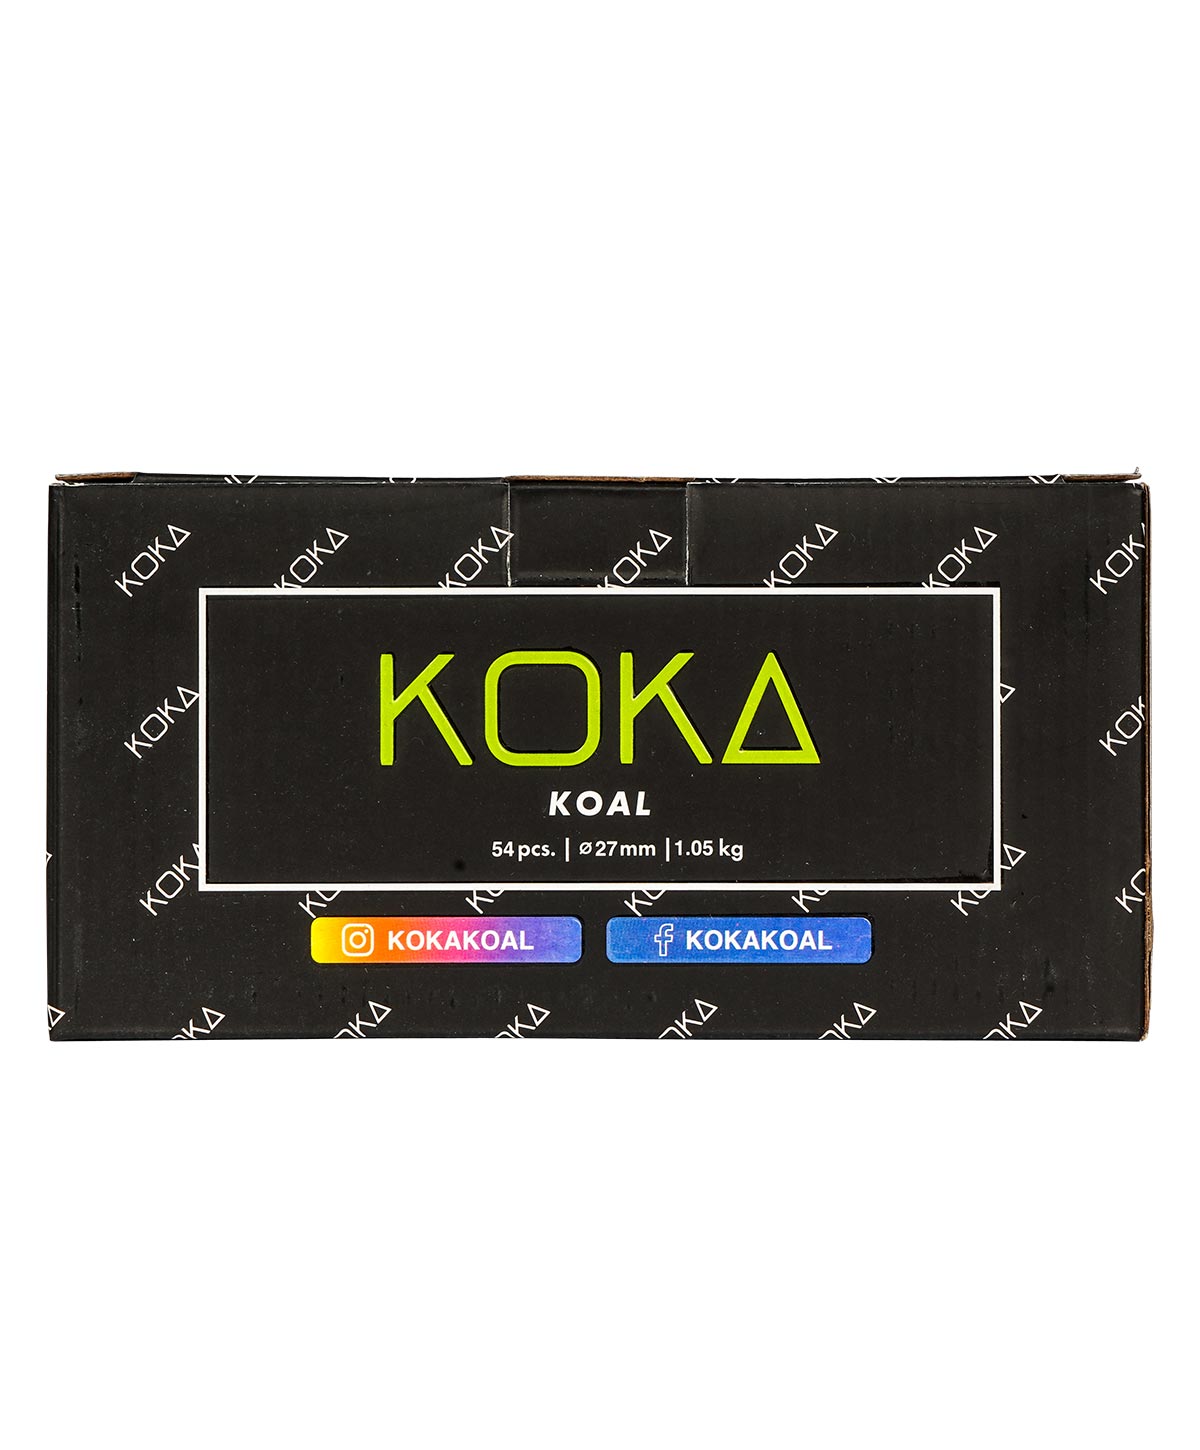 Koka Koal Shisha Kohle 27mm 1Kg